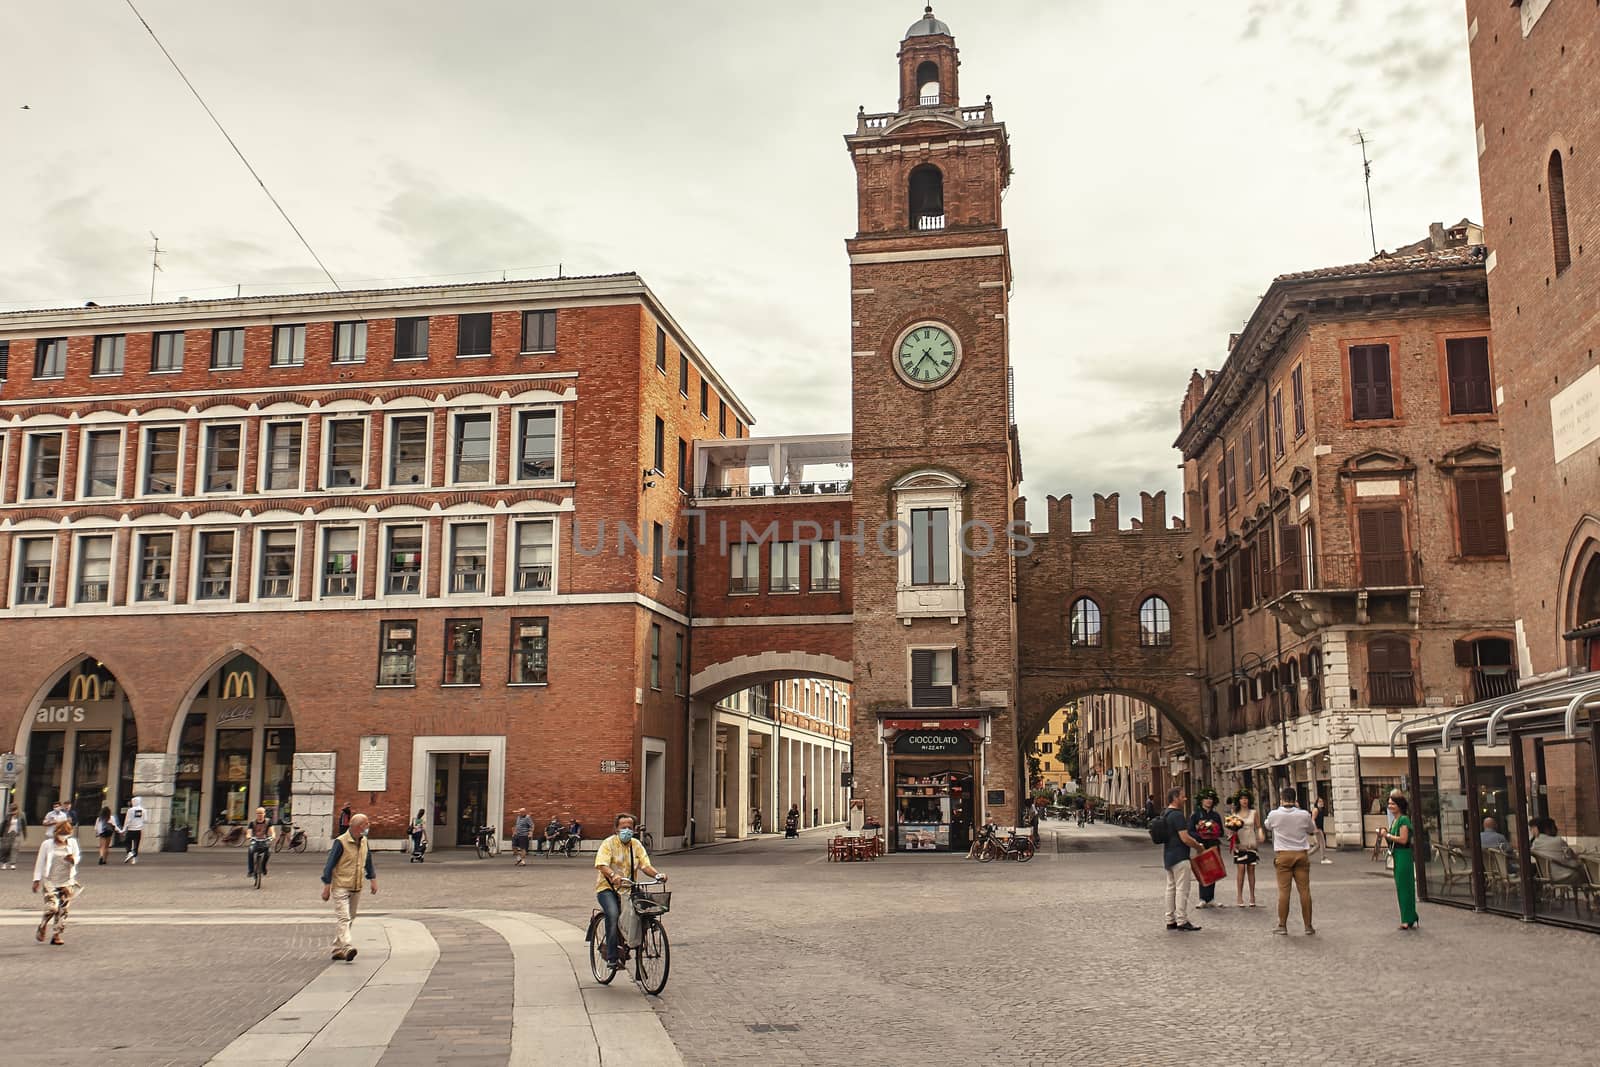 FERRARA, ITALY 29 JULY 2020 : Piazza del Municipio in Ferrara a famous square with clock tower